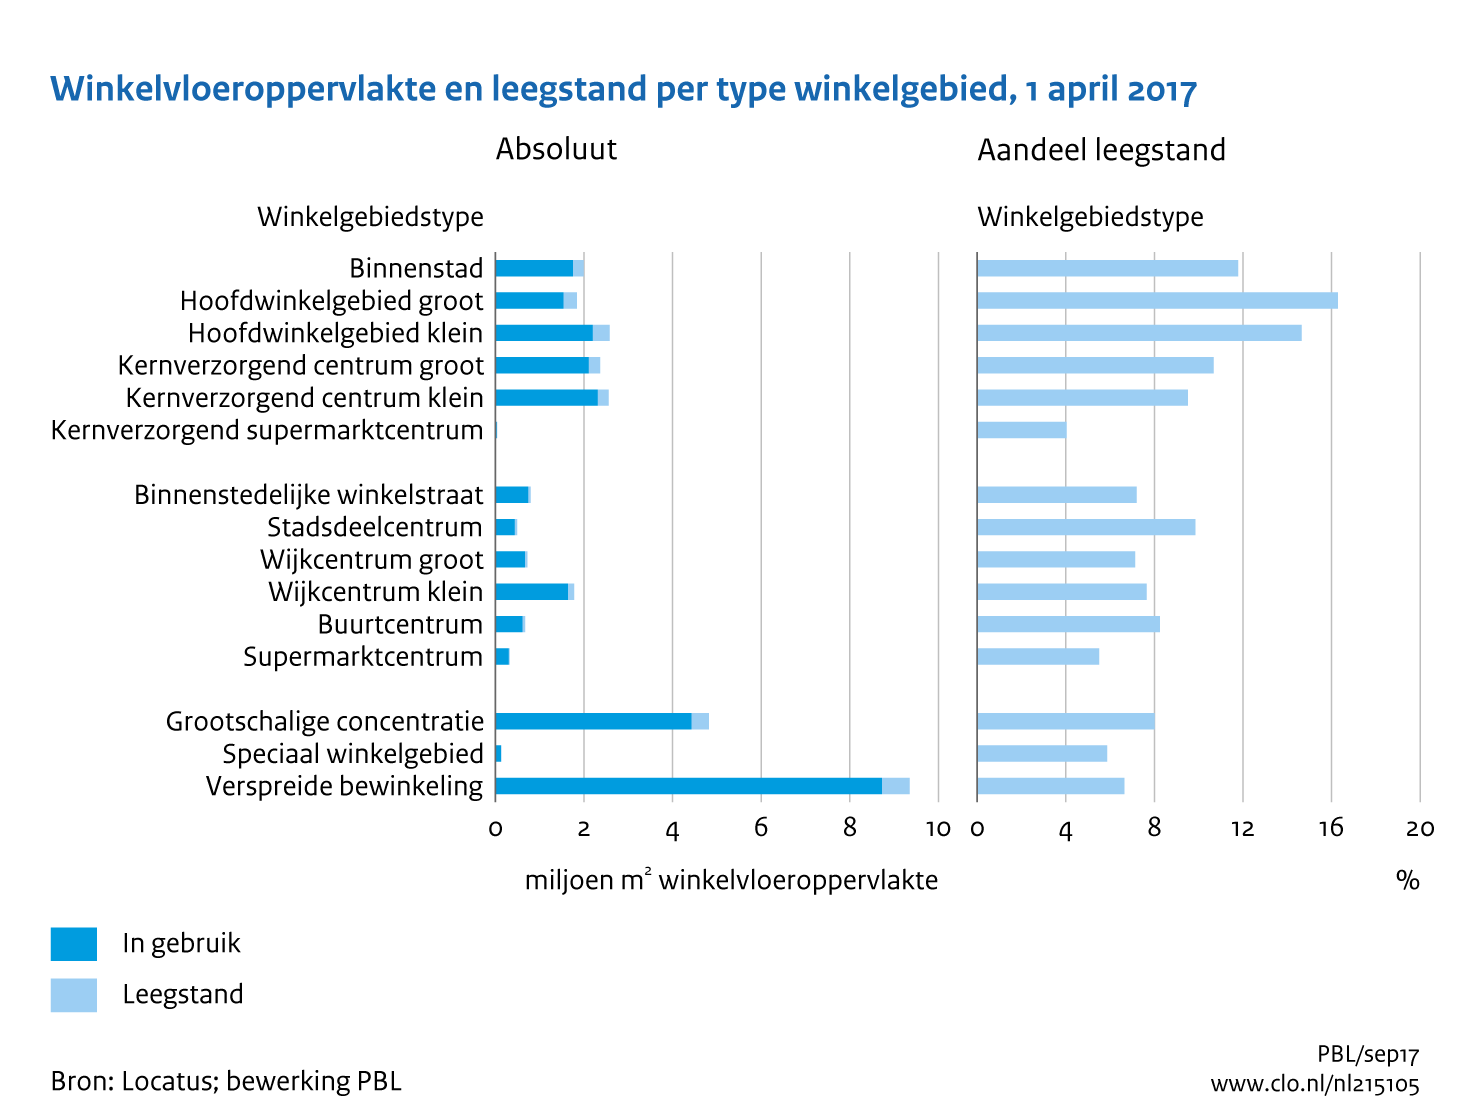 Figuur Winkelvloeroppervlakte en leegstand per type winkelgebied, 1 april 2017. In de rest van de tekst wordt deze figuur uitgebreider uitgelegd.